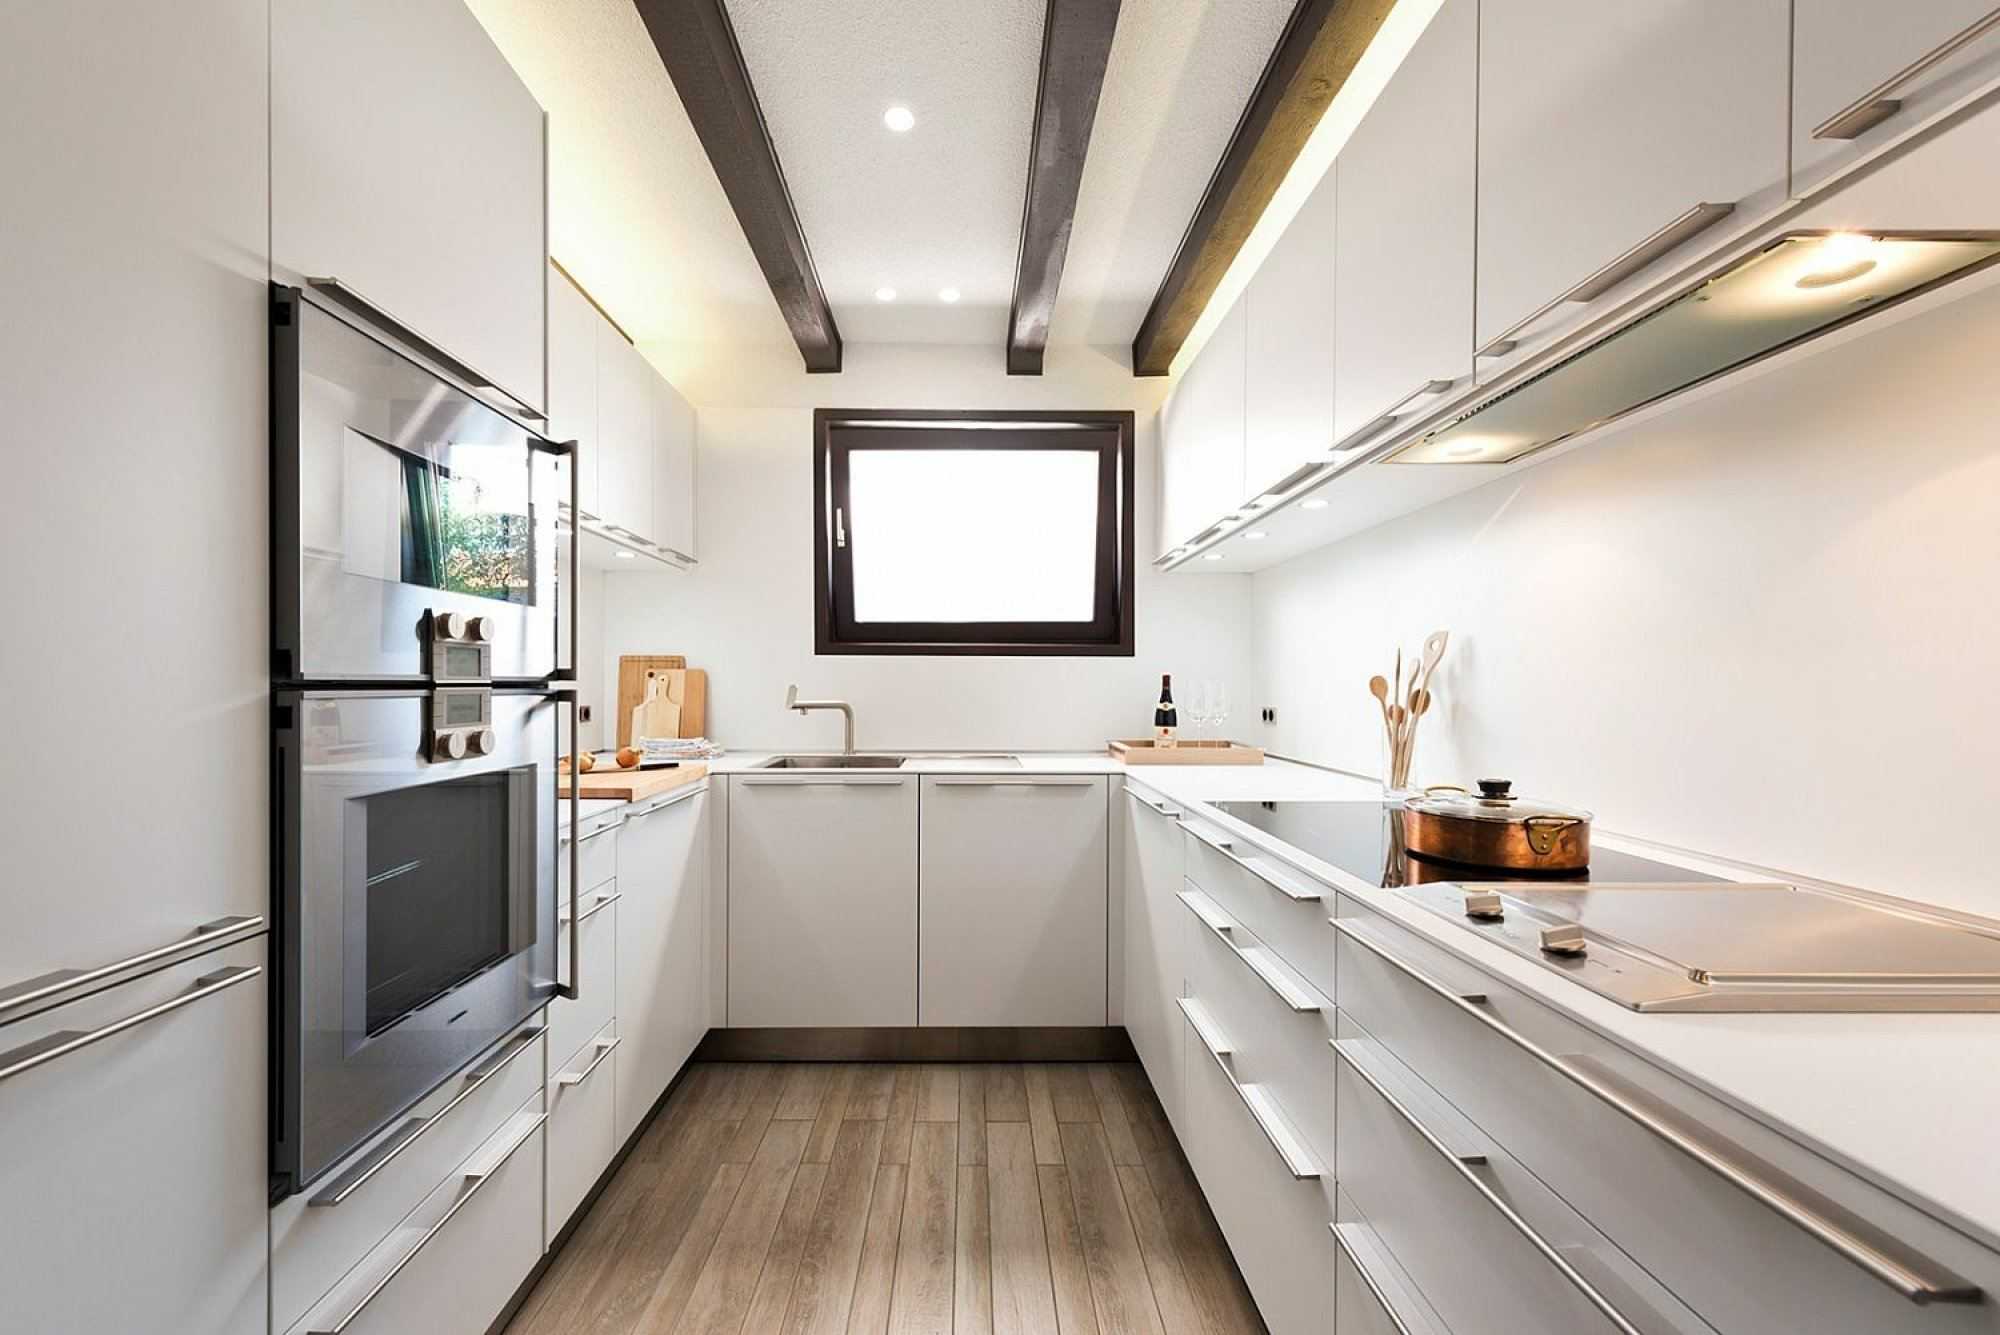 Ваша кухня — узкая и вытянутая Ничего страшного: мы подготовили подборку стильных интерьеров кухонь-вагончиков и собрали целый набор практичных, реально работающих дизайнерских решений, помогающих обойти этот недостаток